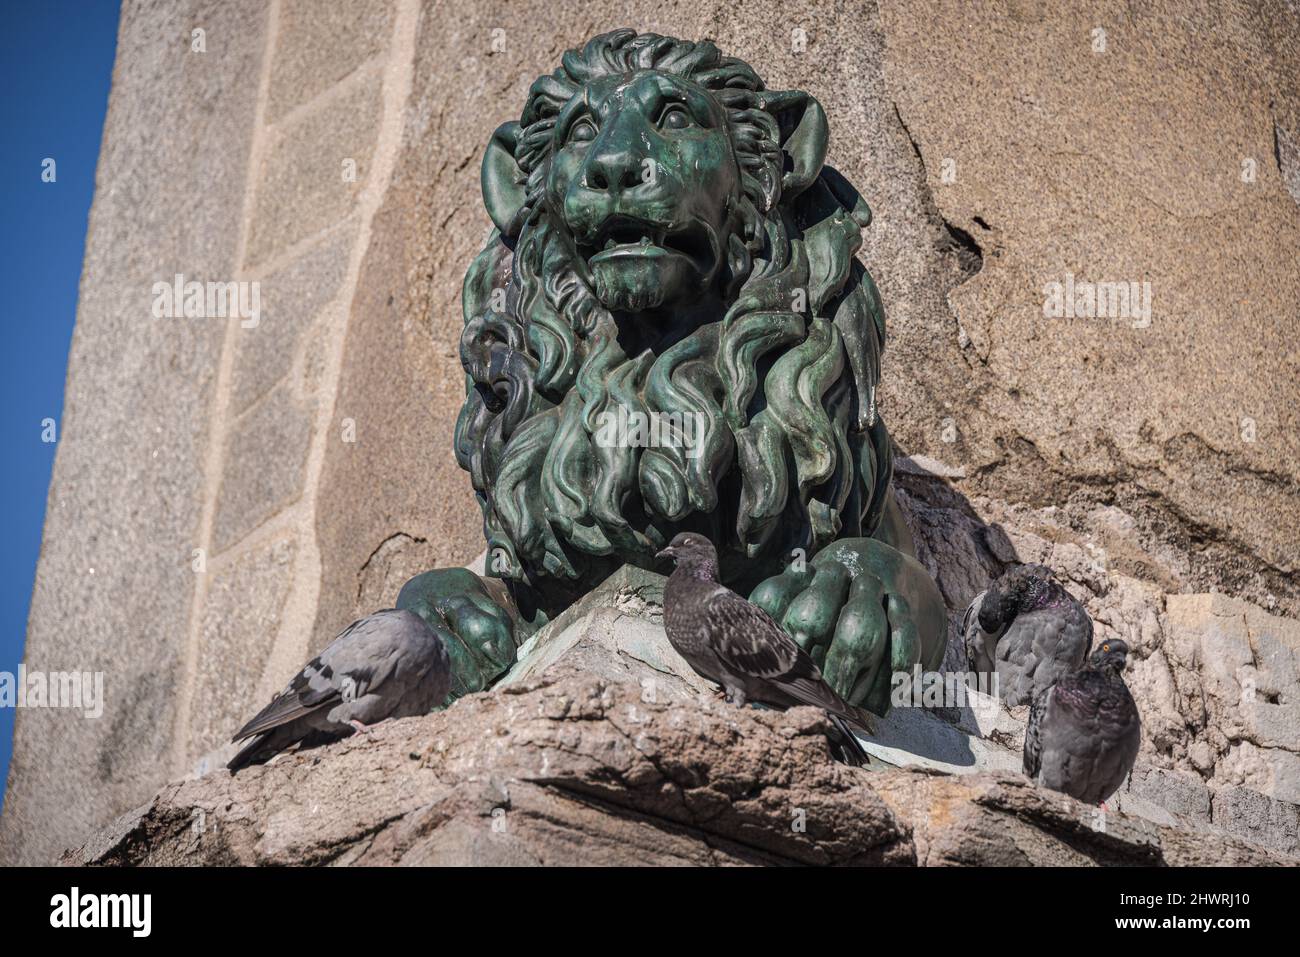 Lion sculpture on Arles Obelisk (Obelisque d'Arles), Arles, Provence, France Stock Photo